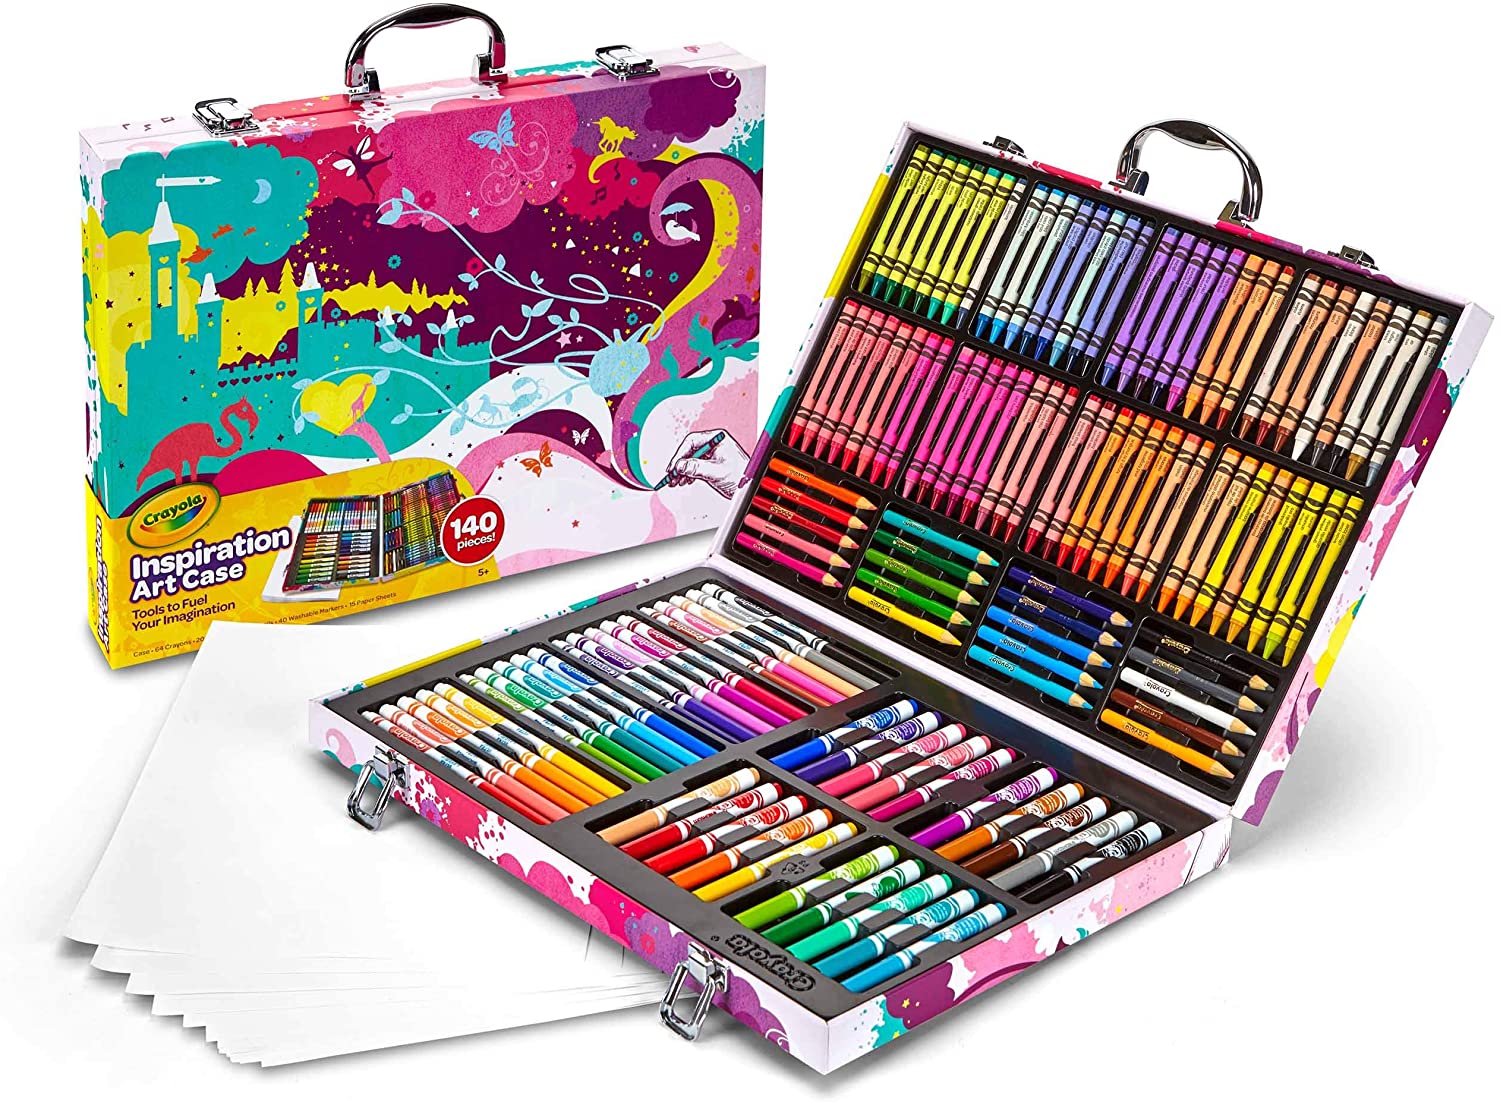 Crayola art kit. 